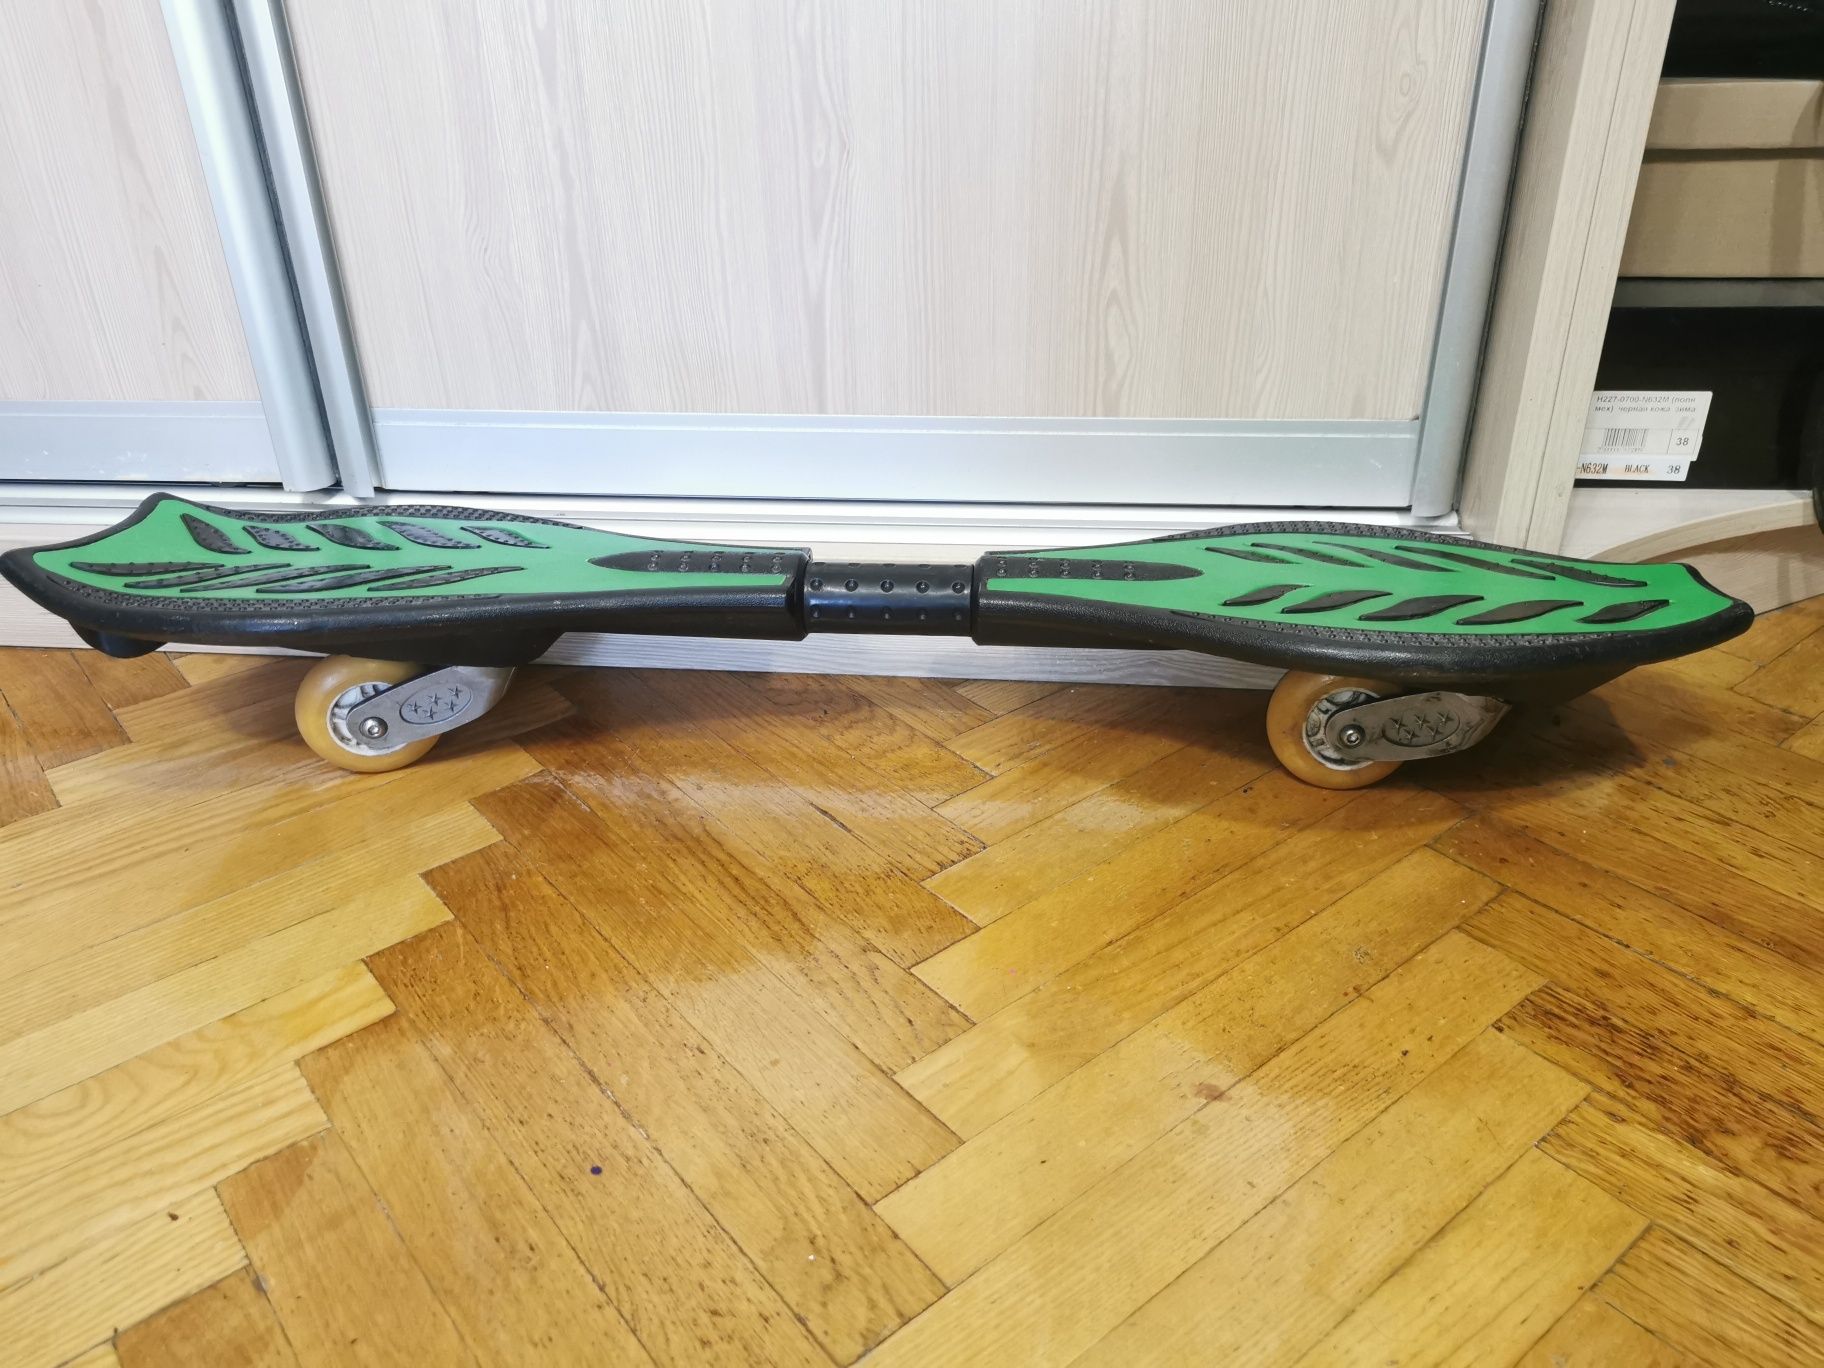 Скейд двухколесный "Ripstik", полиуретановые колеса.